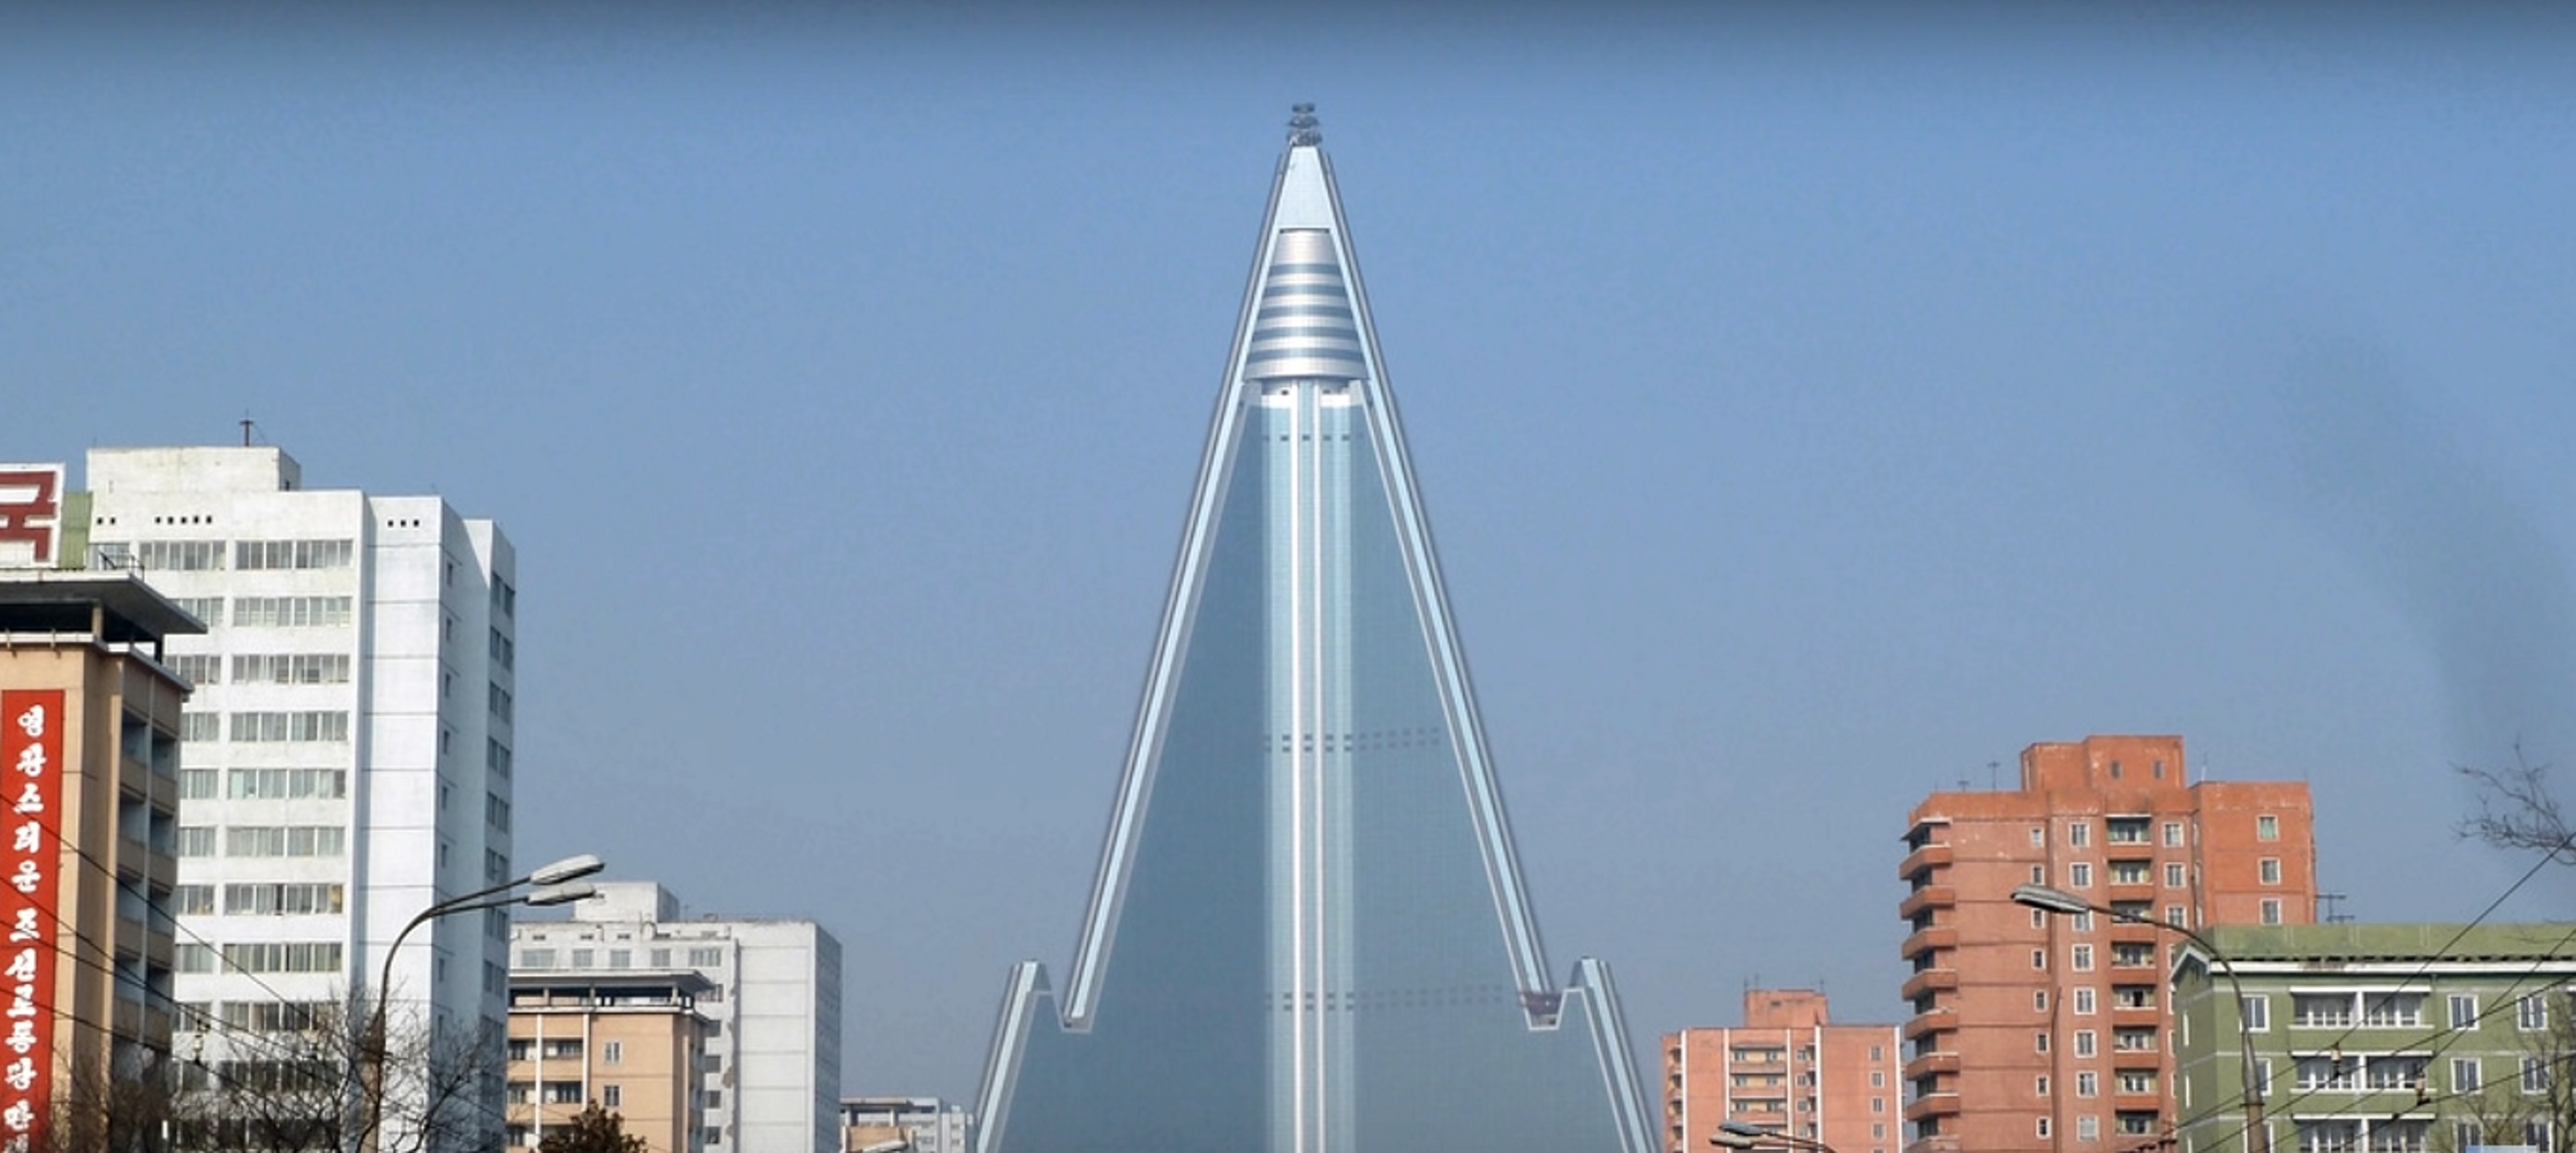 Βόρεια Κορέα: Αυτό είναι το υψηλότερο αχρησιμοποίητο κτίριο στον κόσμο! video